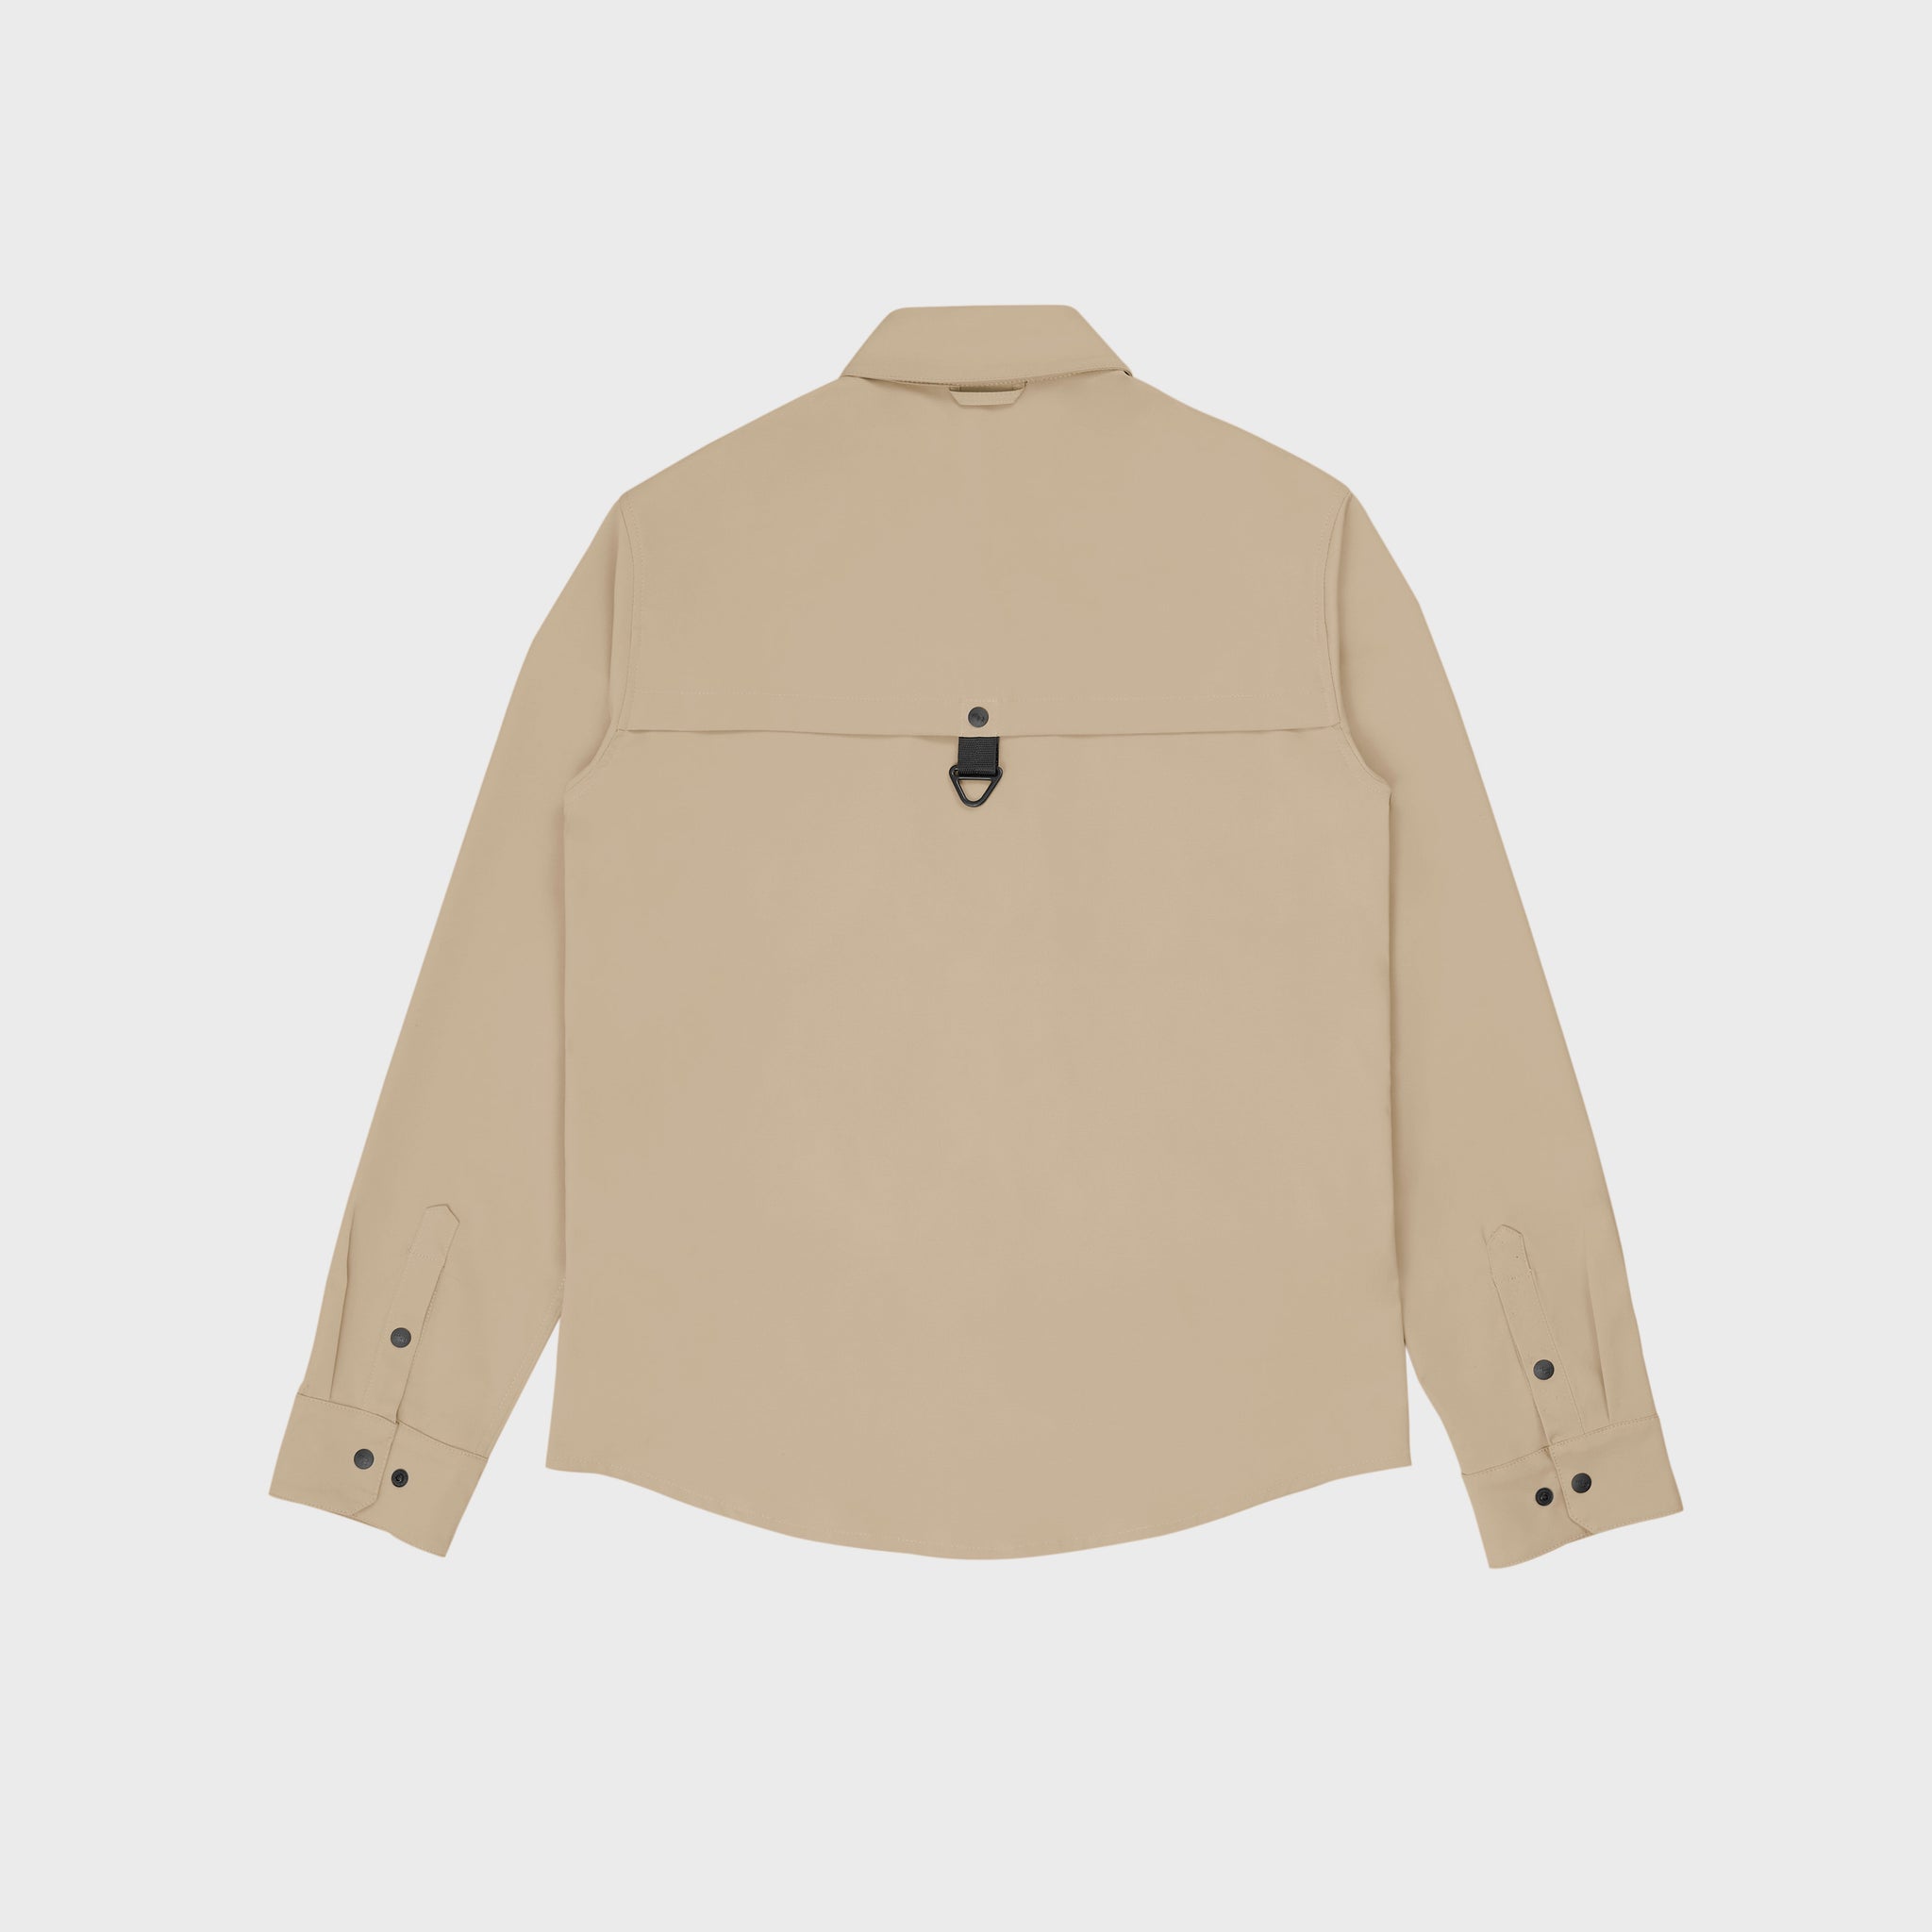 Hoffman Shirt- Beige [Flexi-Shield]